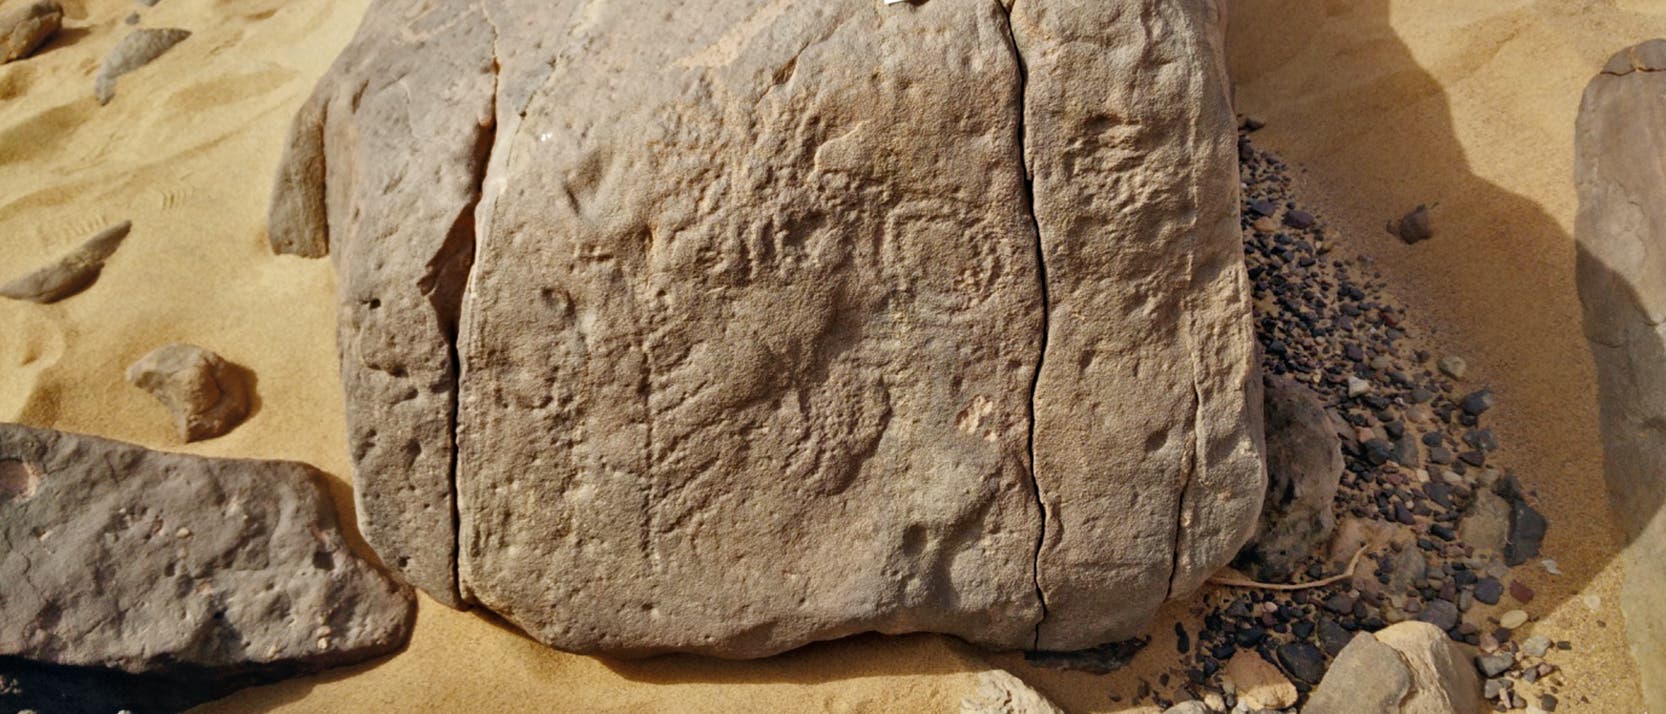 »Domäne des Horus-Königs Skorpion« steht auf der Felsinschrift, die Ägyptologen 2018 in einem Wadi östlich von Assuan entdeckten.